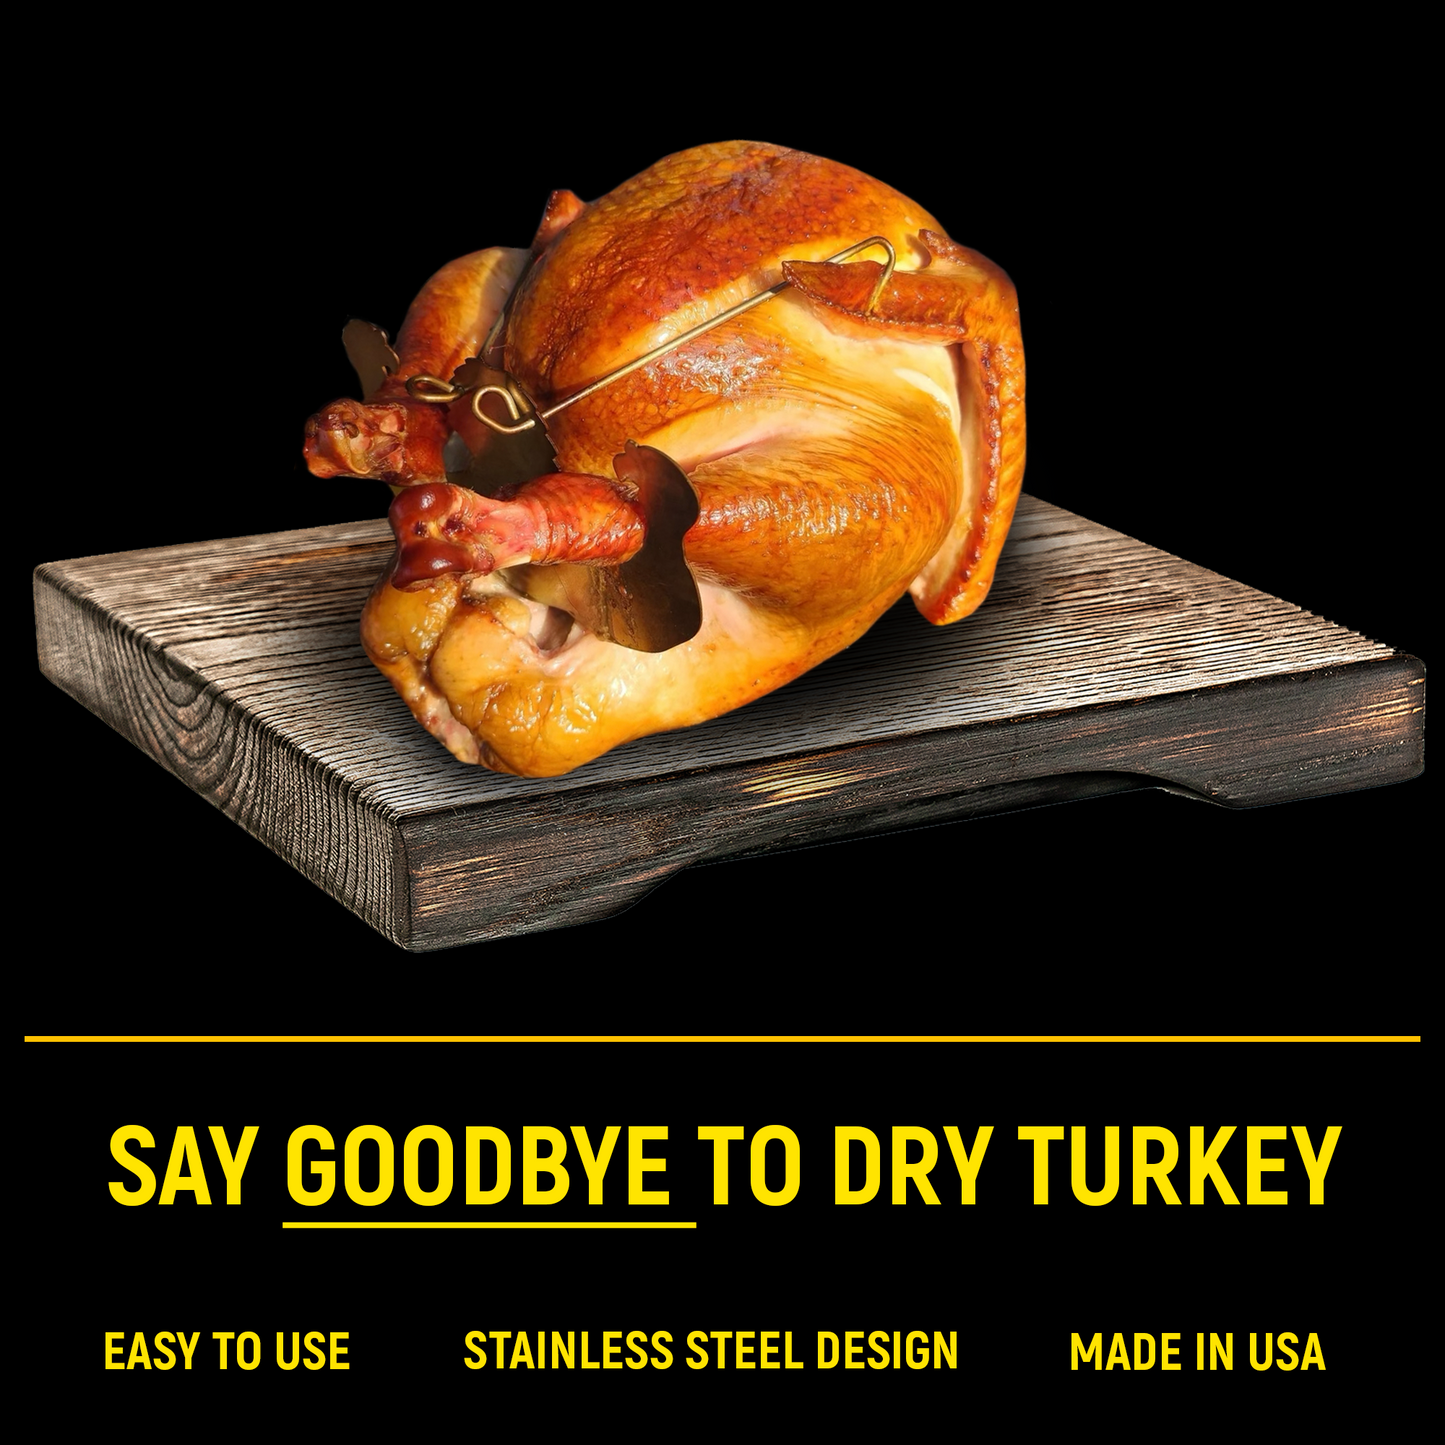 Turbo Trusser | Chicken and Turkey Bundle